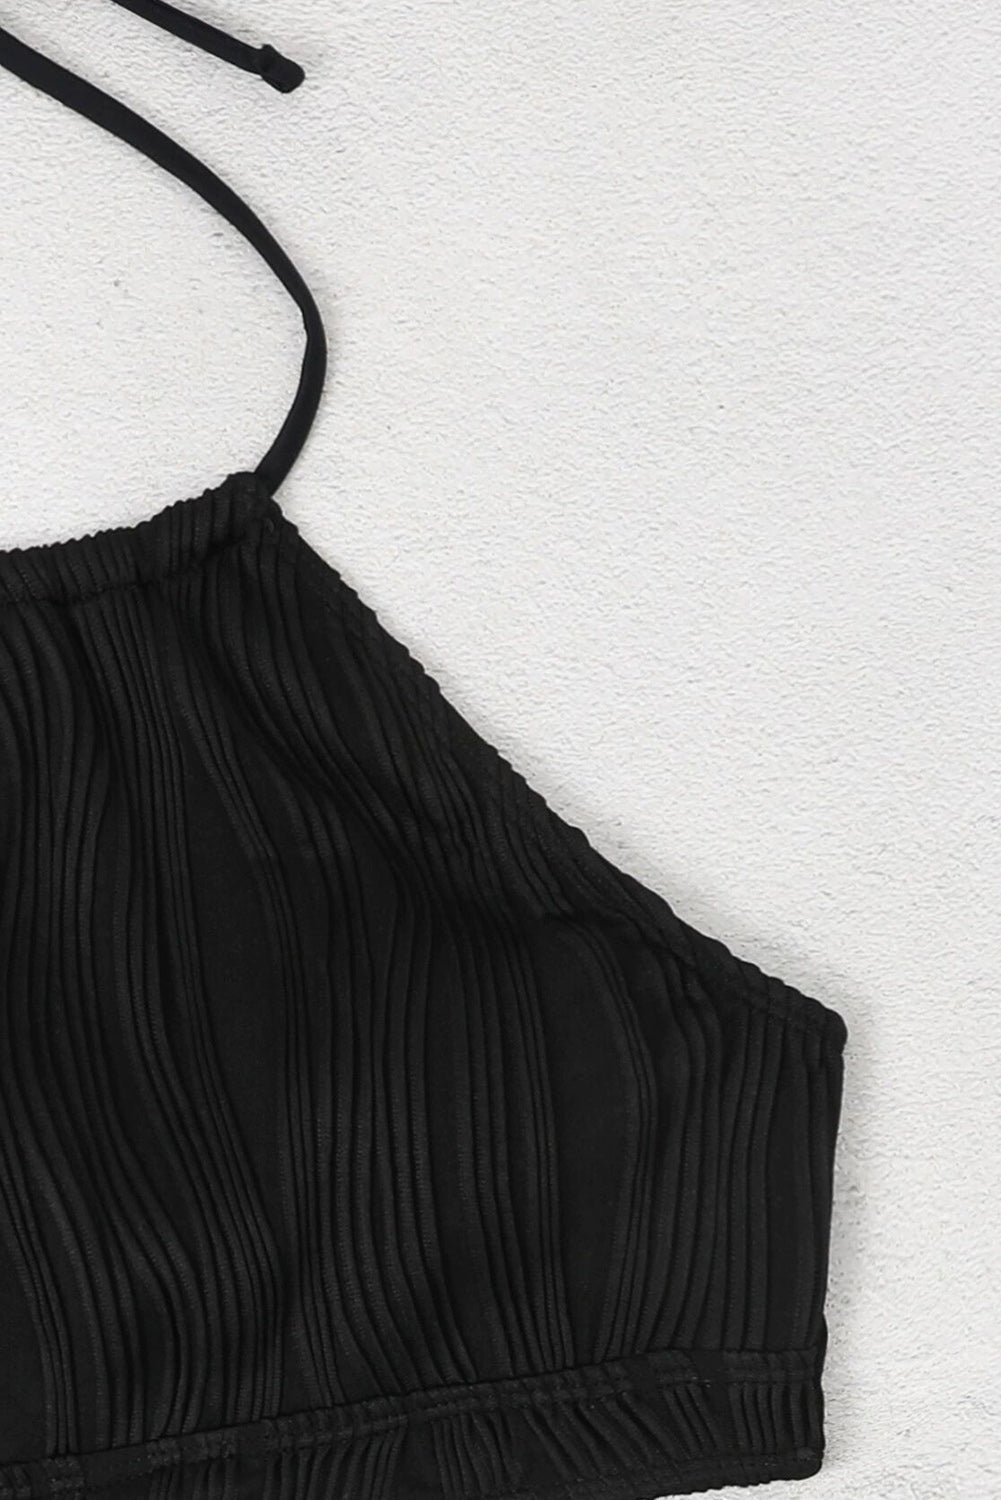 Črni bikiniji brez hrbta s povodcem in povezanim O obročem